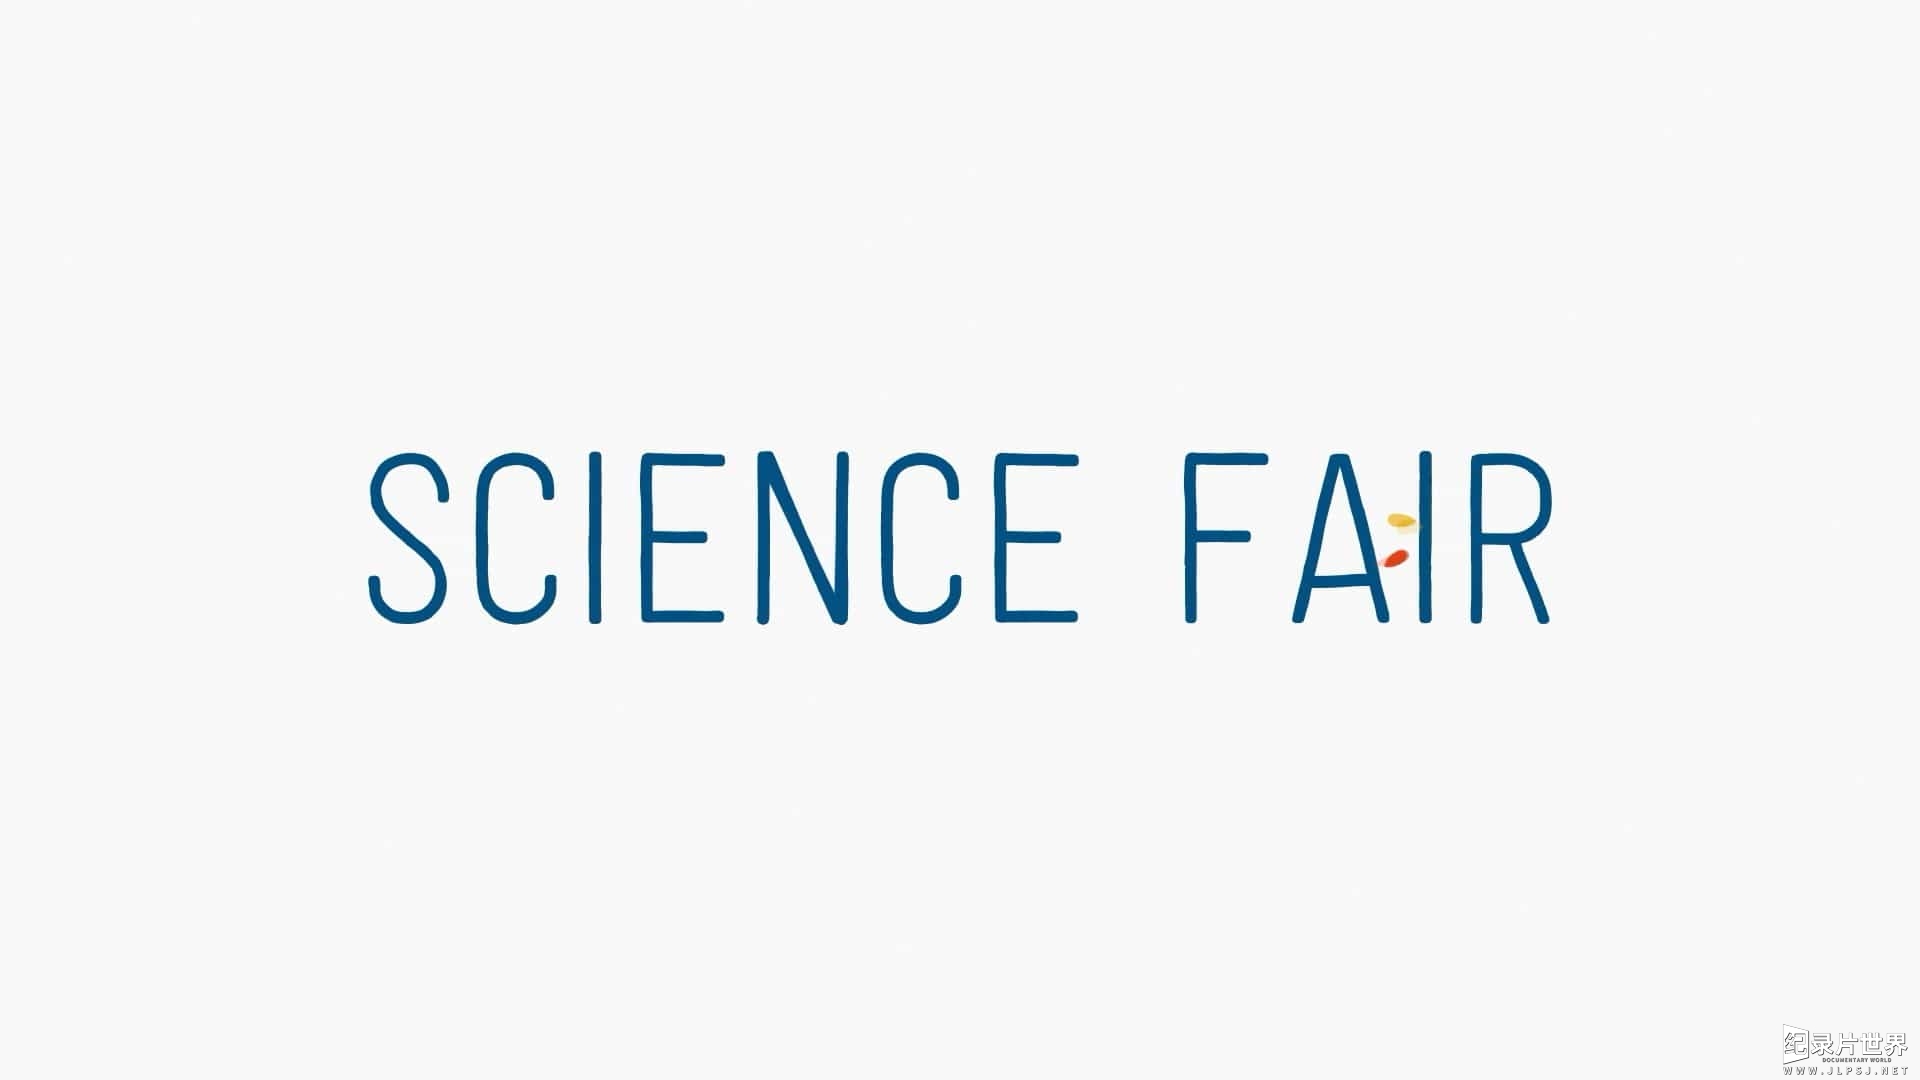 国家地理《环球青年科学战/科学竞赛 Science Fair 2018》全1集 